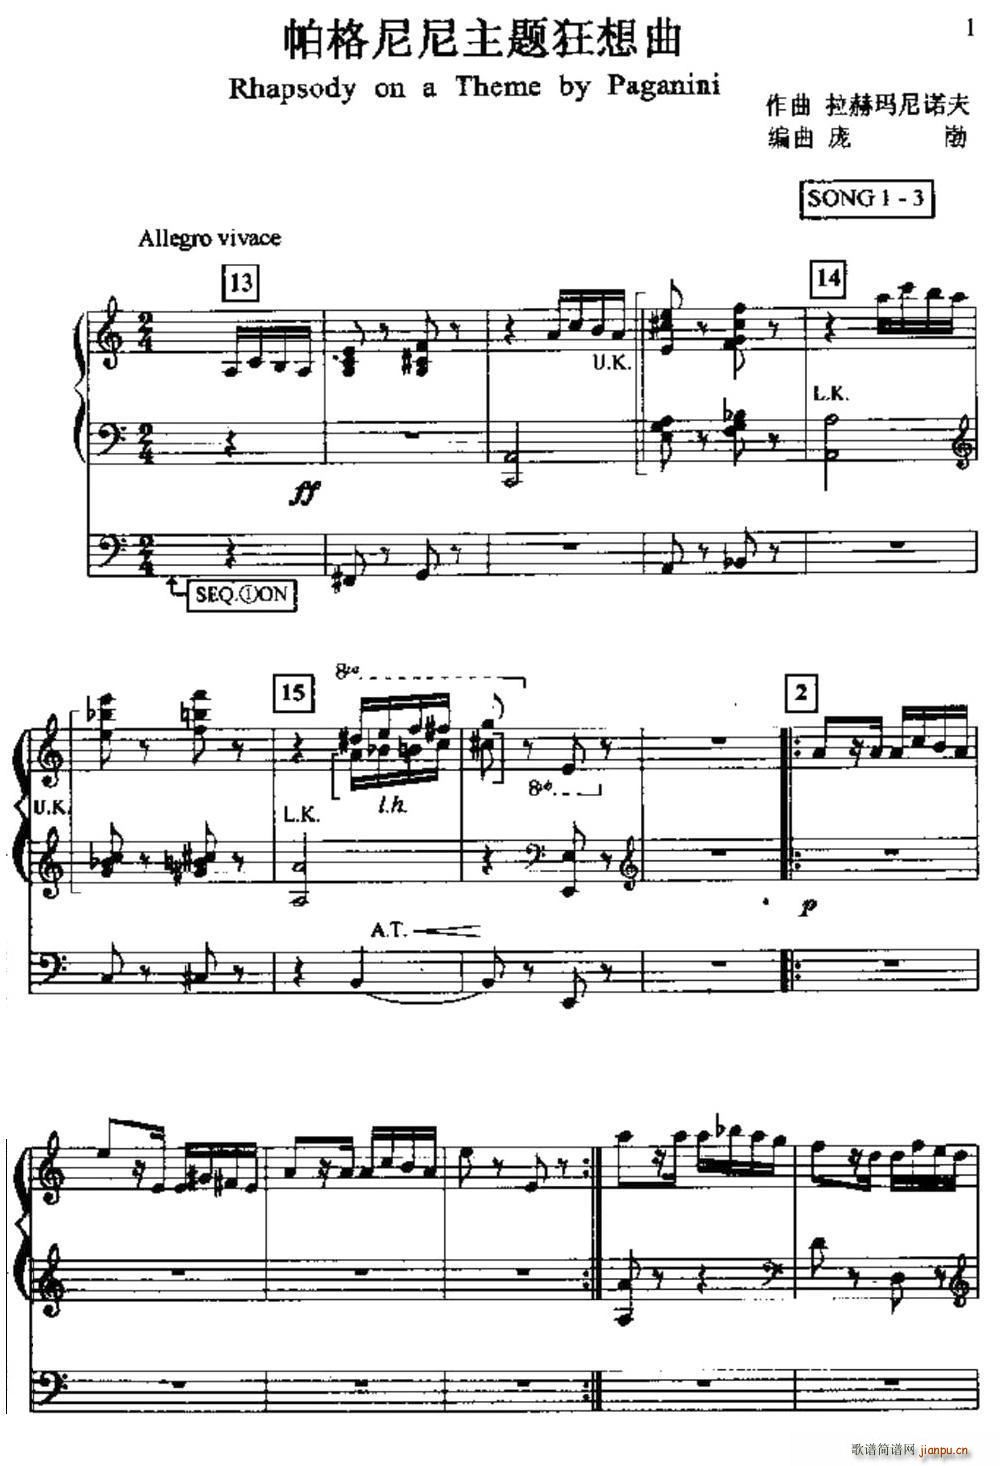 帕格尼尼主题狂想曲 双排键电子琴(电子琴谱)1